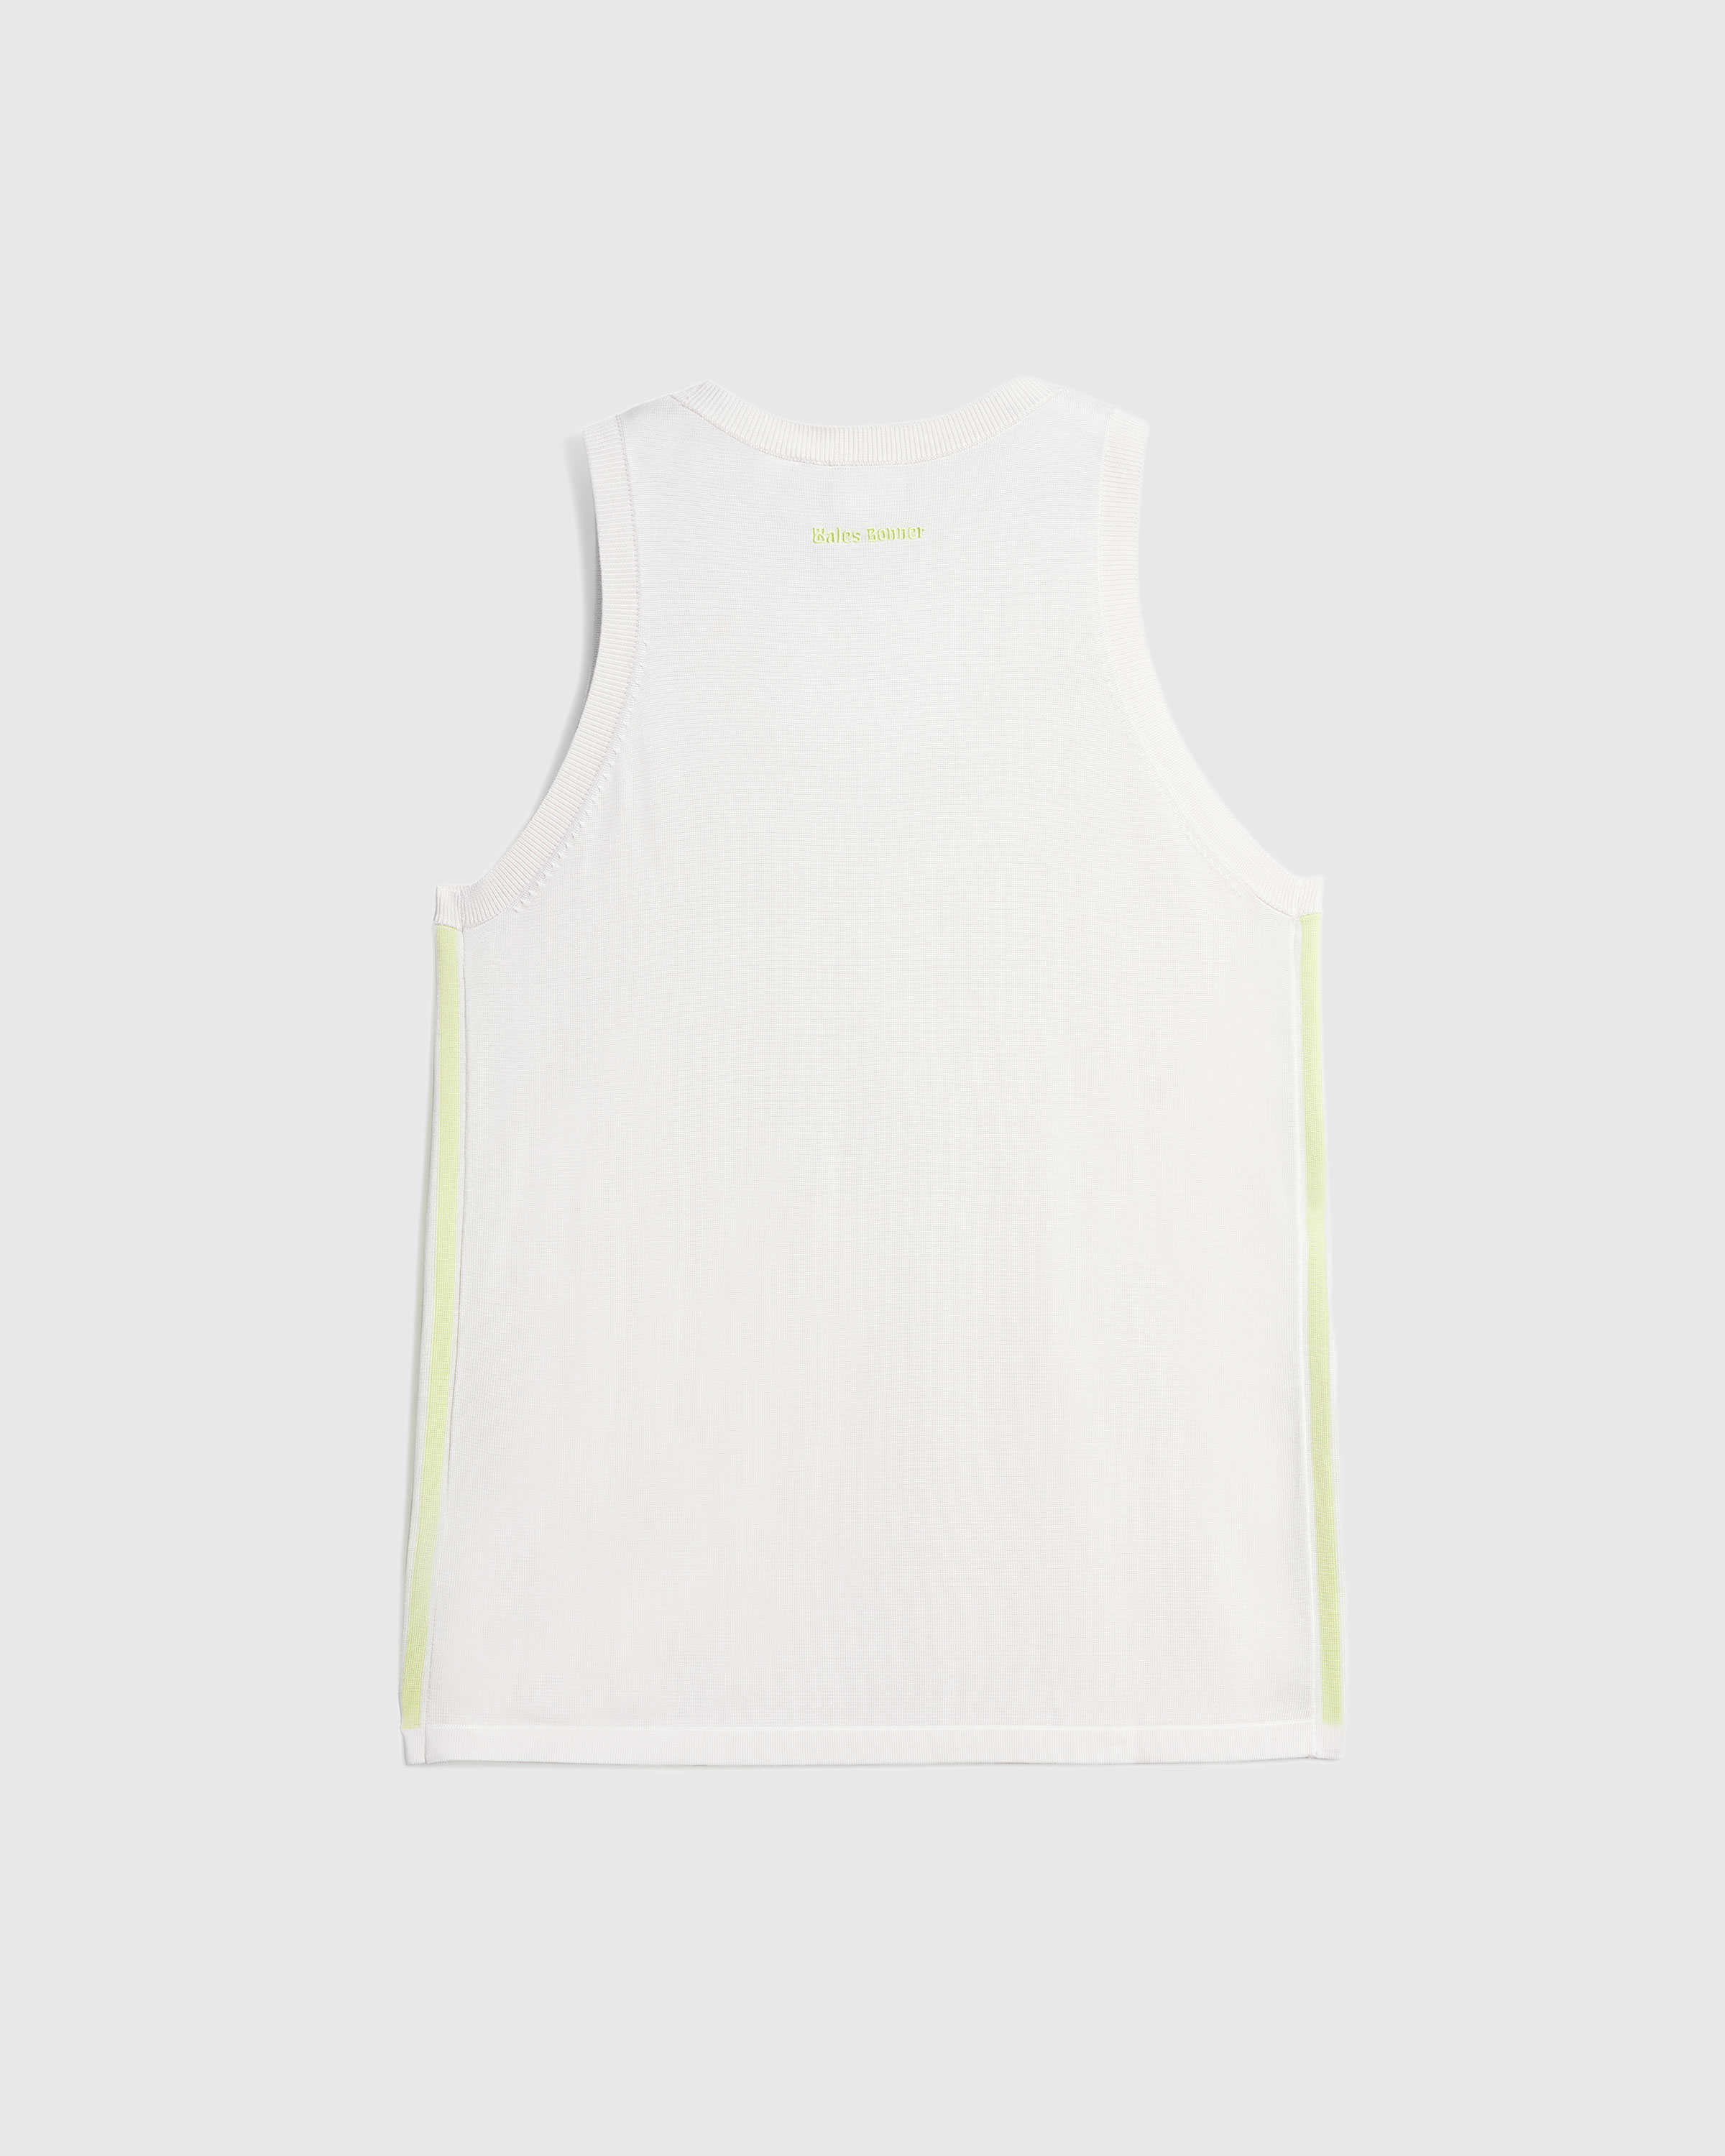 Adidas x Wales Bonner – Knit Vest Chalk White/Semi Frozen Yellow - Tank Tops - White - Image 4